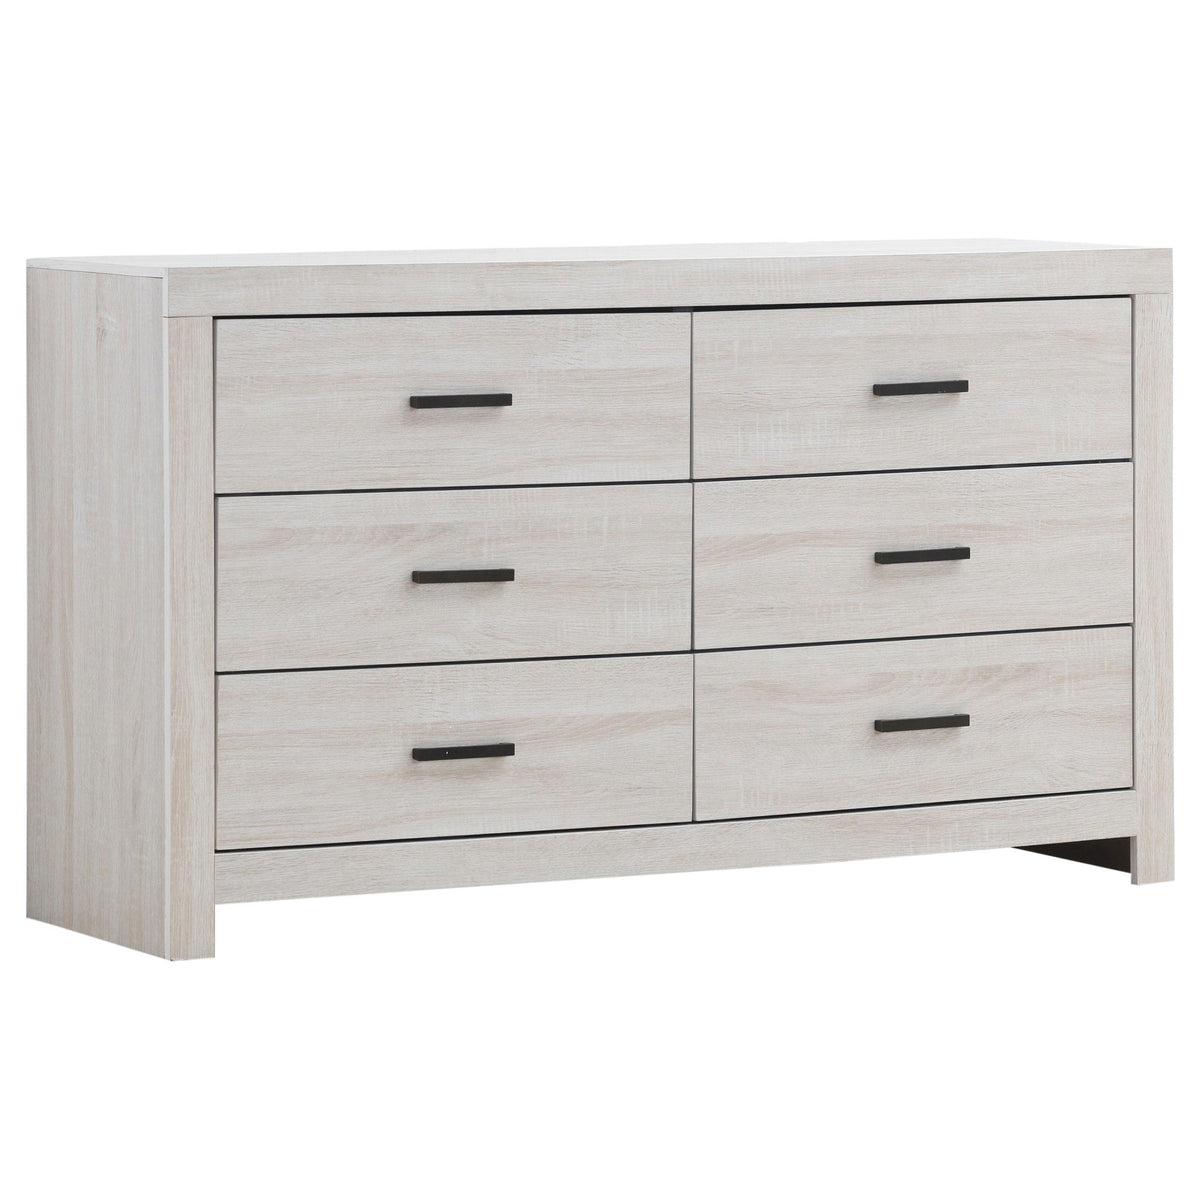 Brantford 6-drawer Dresser Coastal White Brantford 6-drawer Dresser Coastal White Half Price Furniture